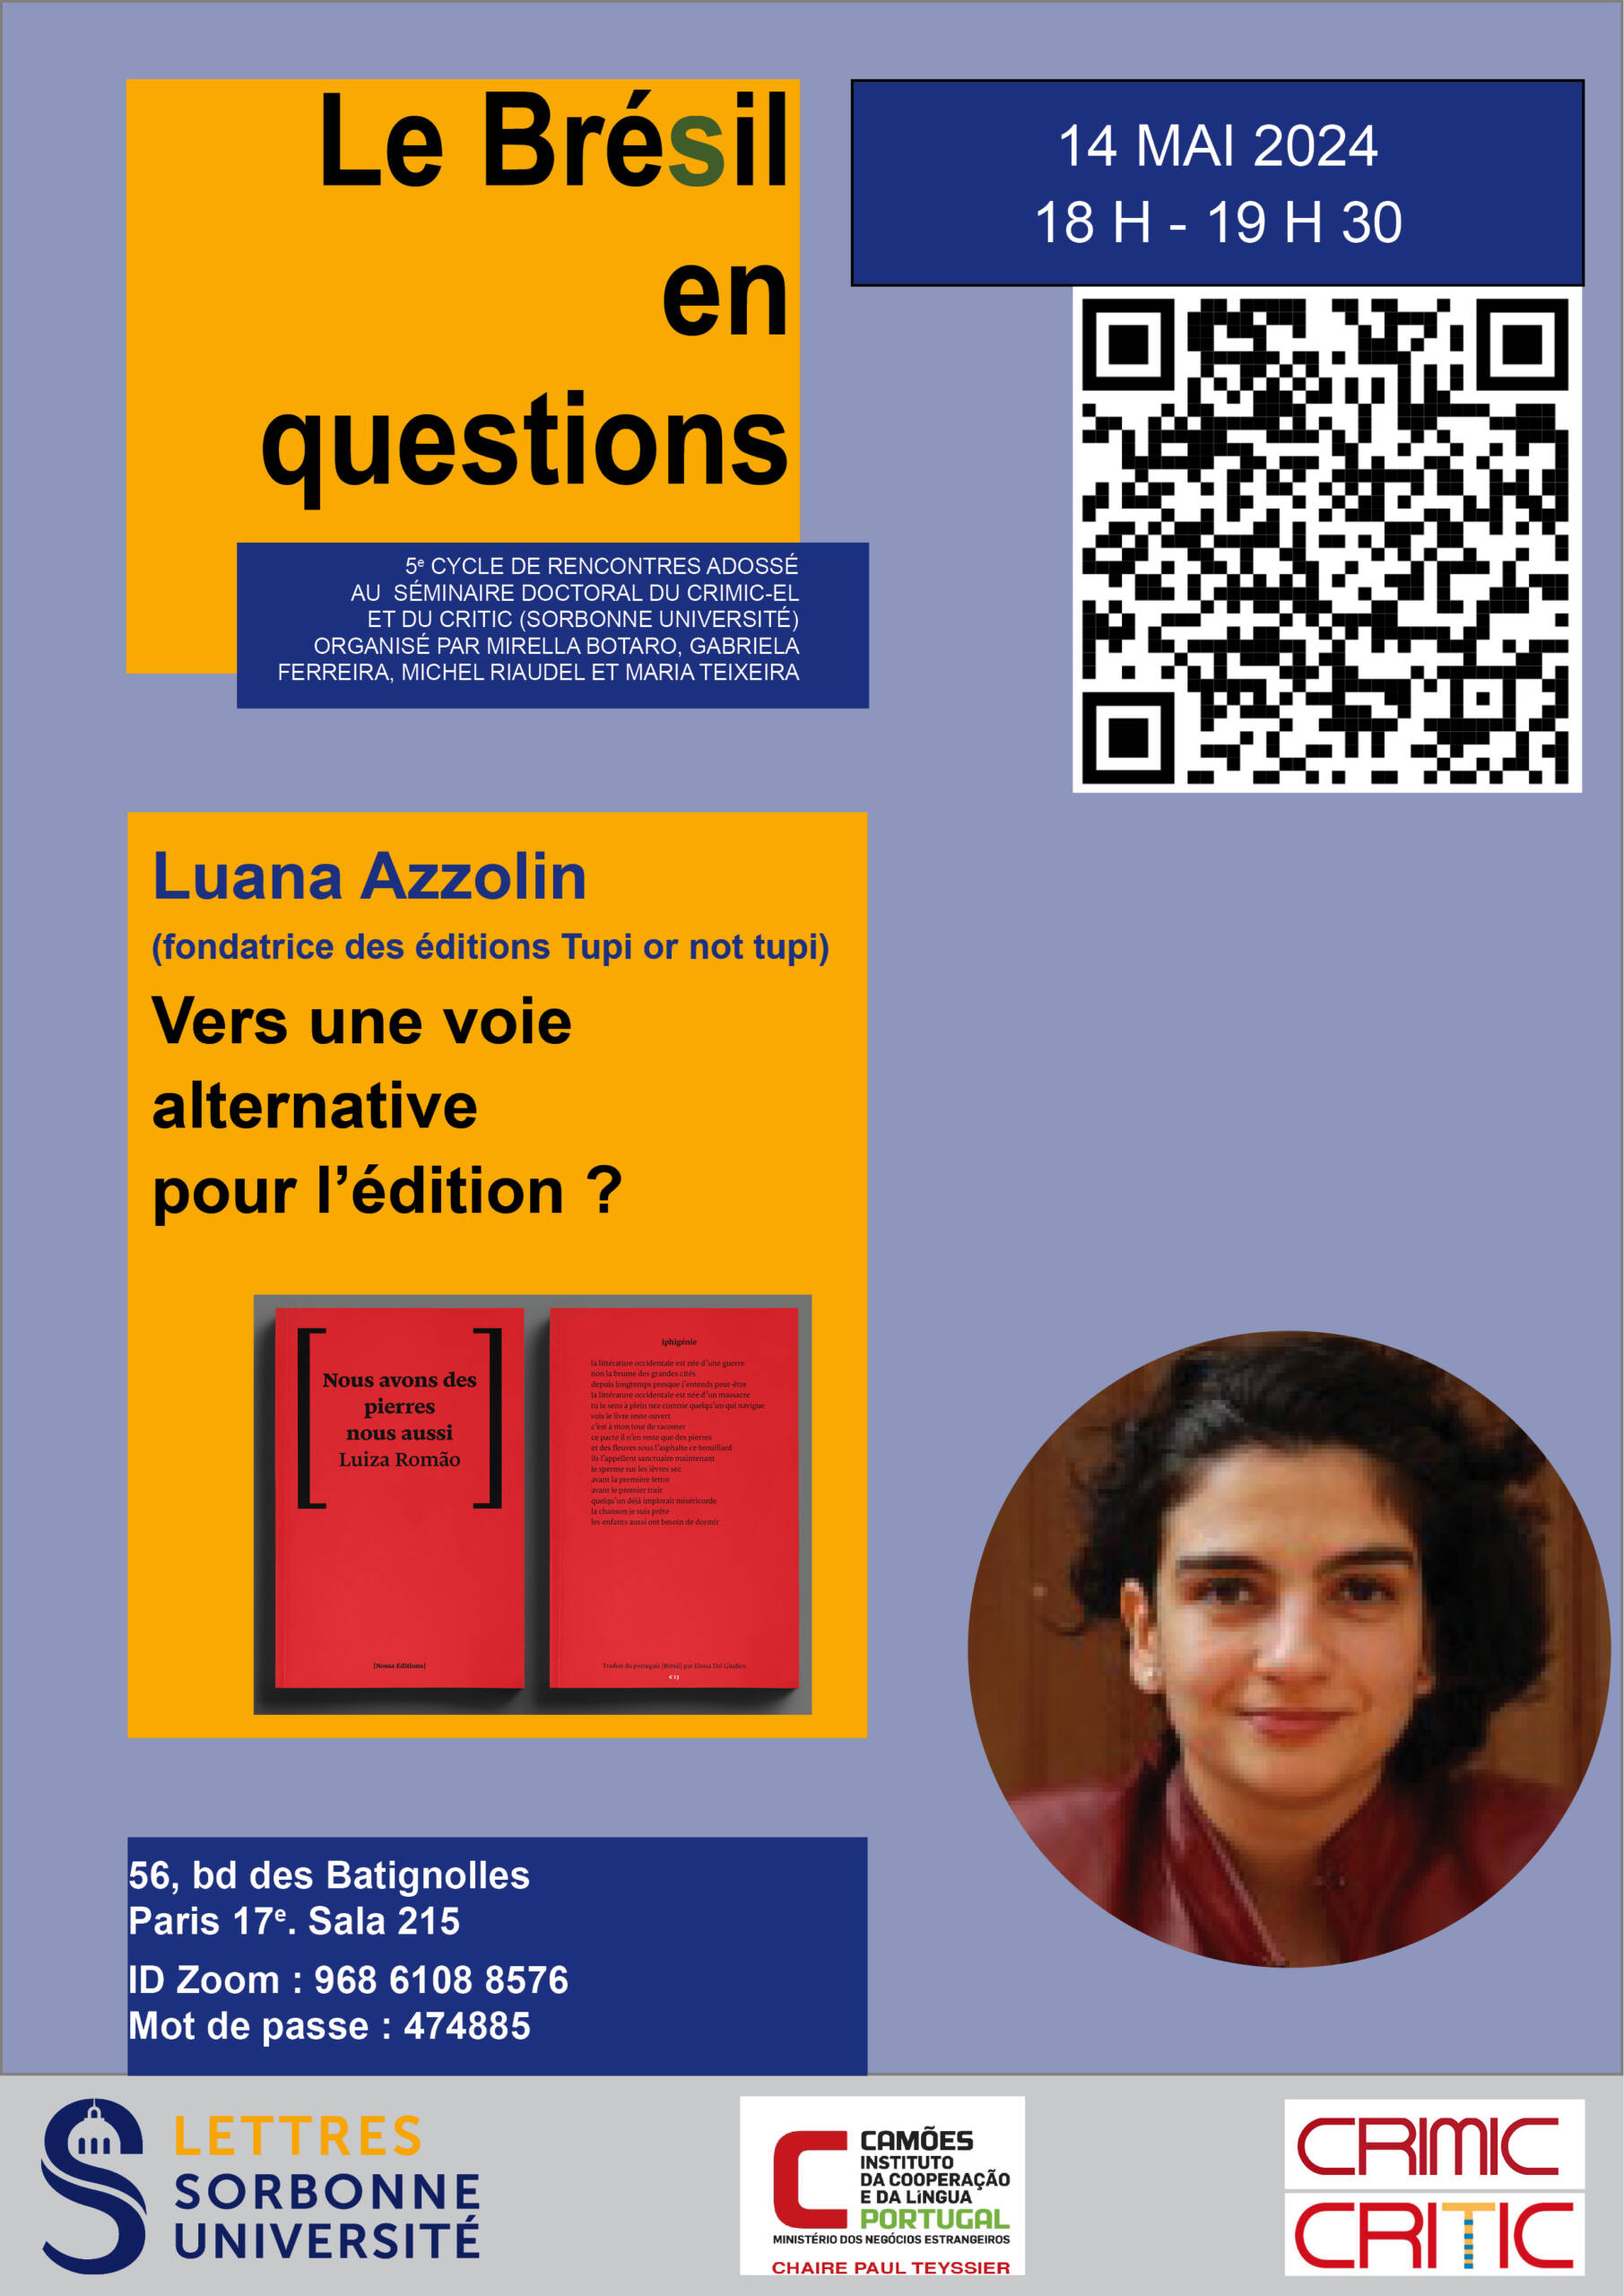 Rencontre avec l'éditrice Luana Azzolin (cycle “Le Brésil en Questions”)